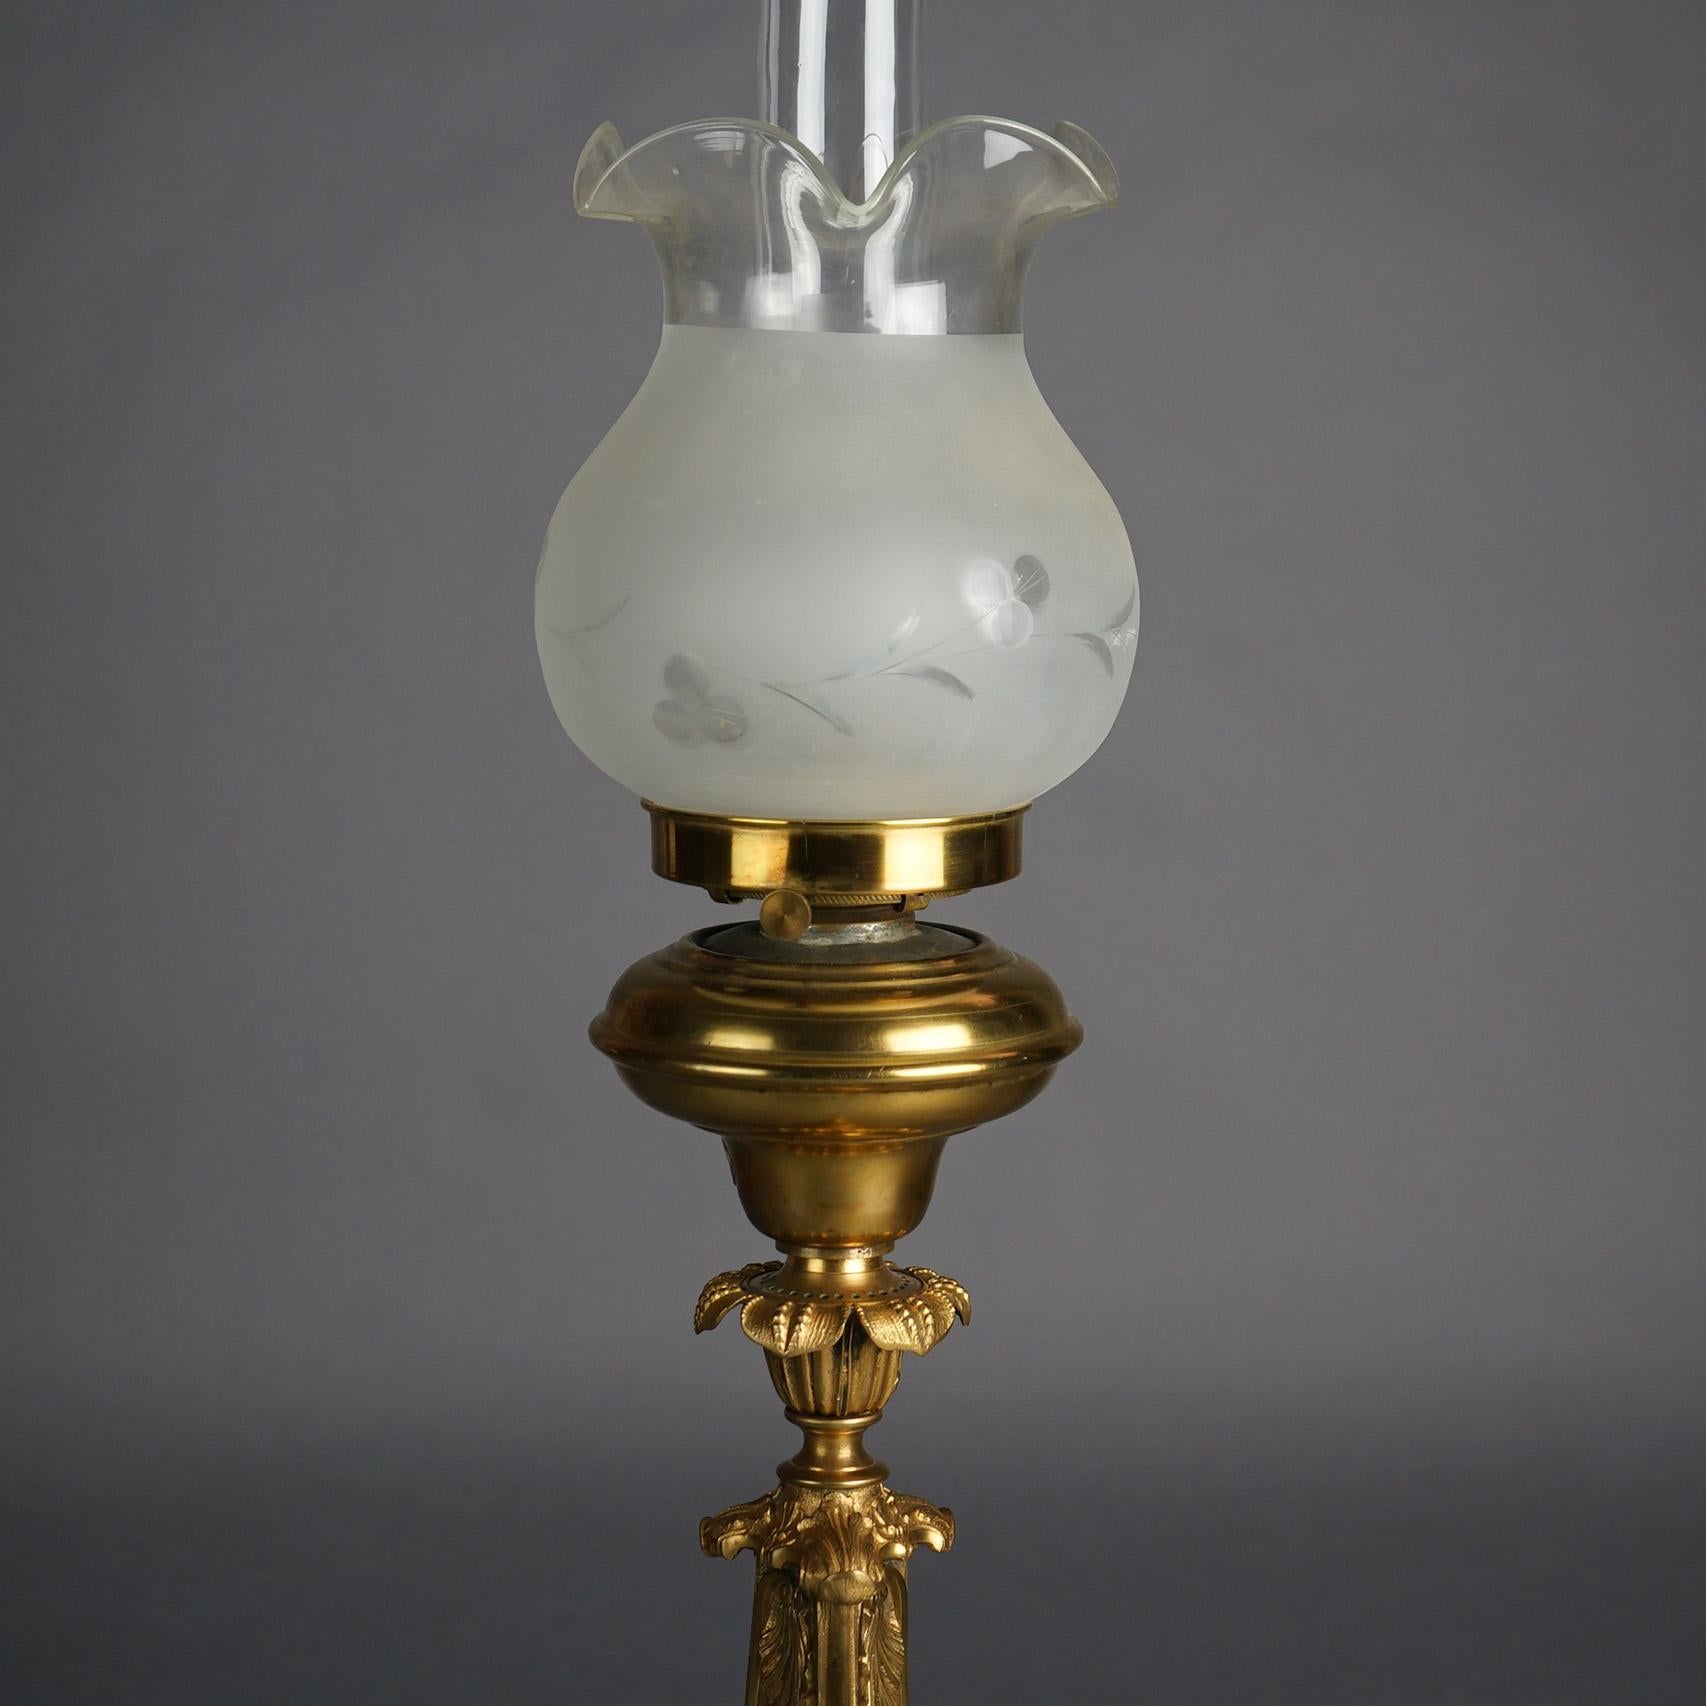 Antique Cornelius School Gilt Bronze Solar Lamp with Cut Glass Shade C1840 6